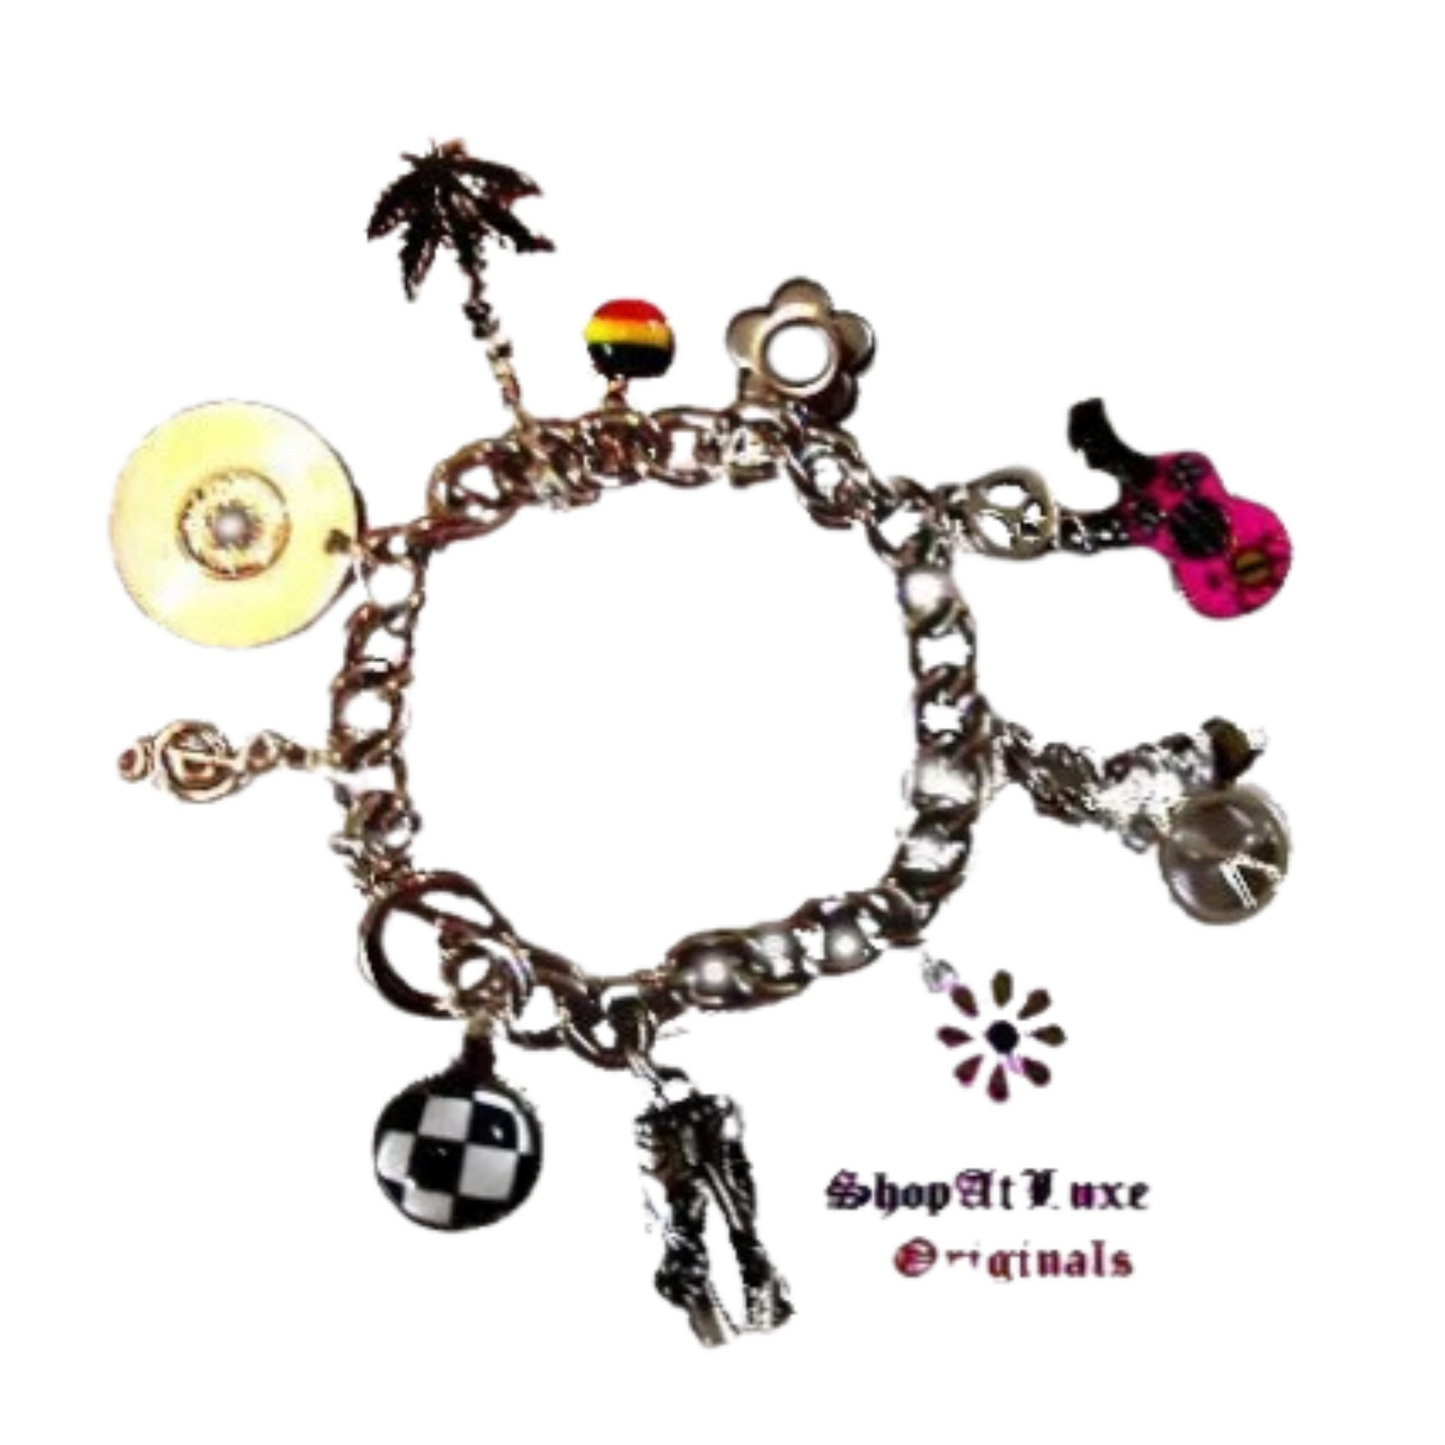 HIPPIE IN HAWAII - Ltd. Charm Bracelet